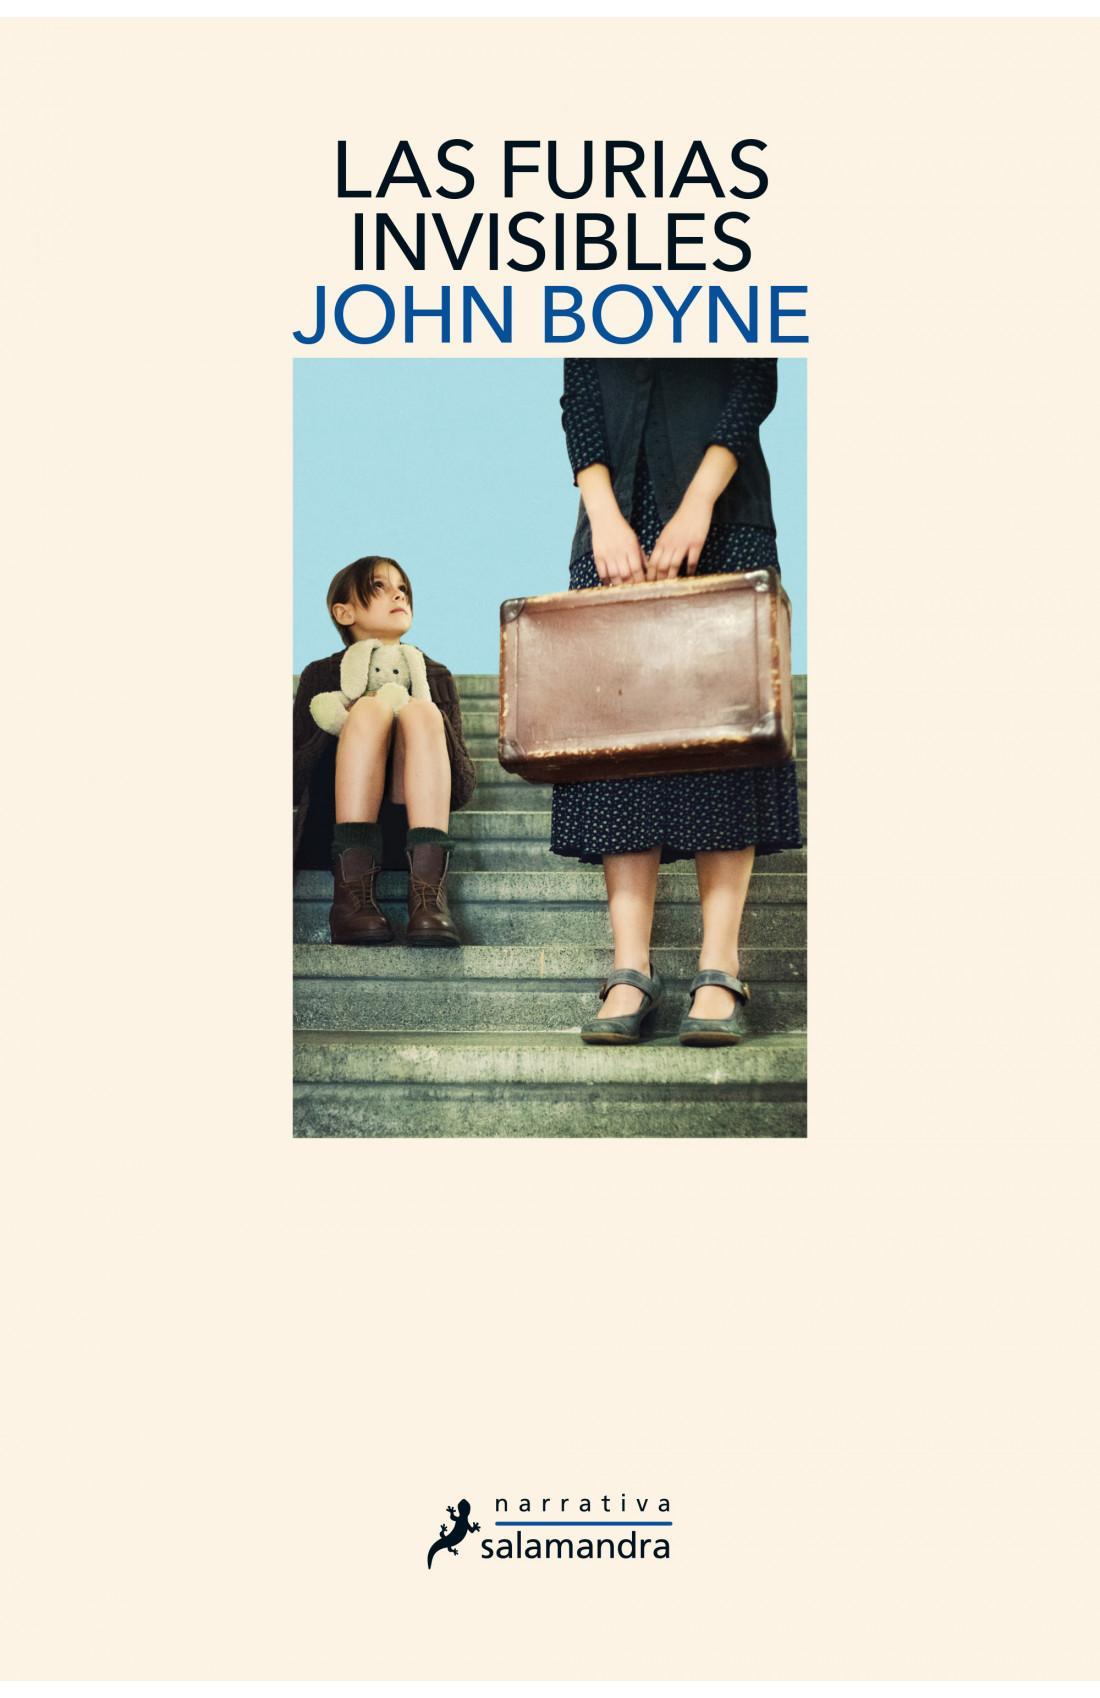 Las furias invisibles del corazon - John Boyne